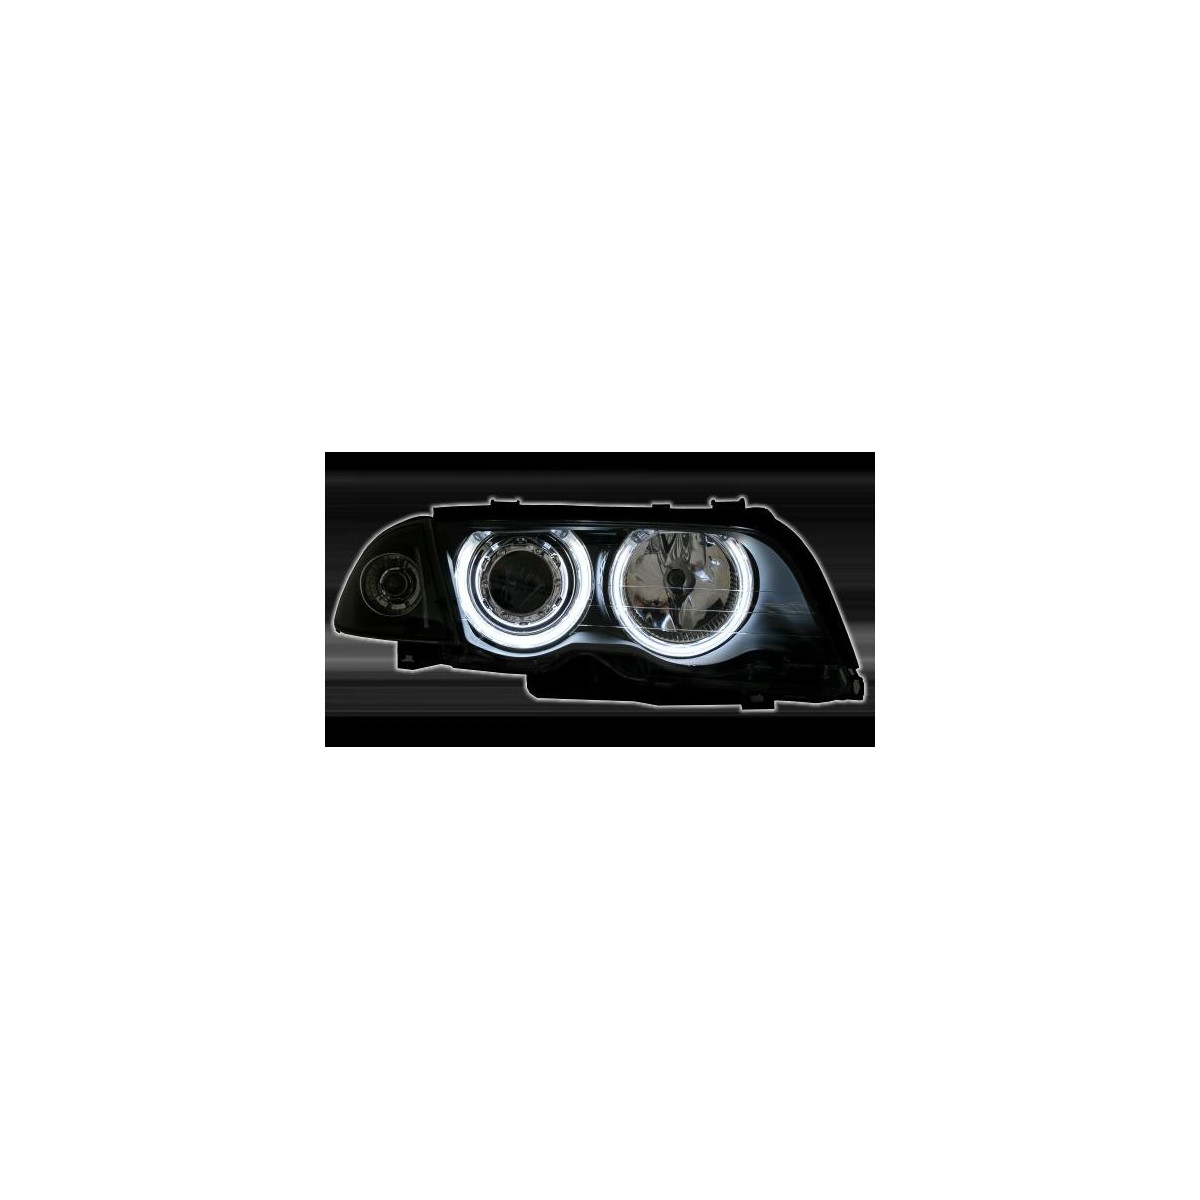 LAMPY PRZEDNIE BMW E46 05.98-08.01 S/T BLACK CCFL